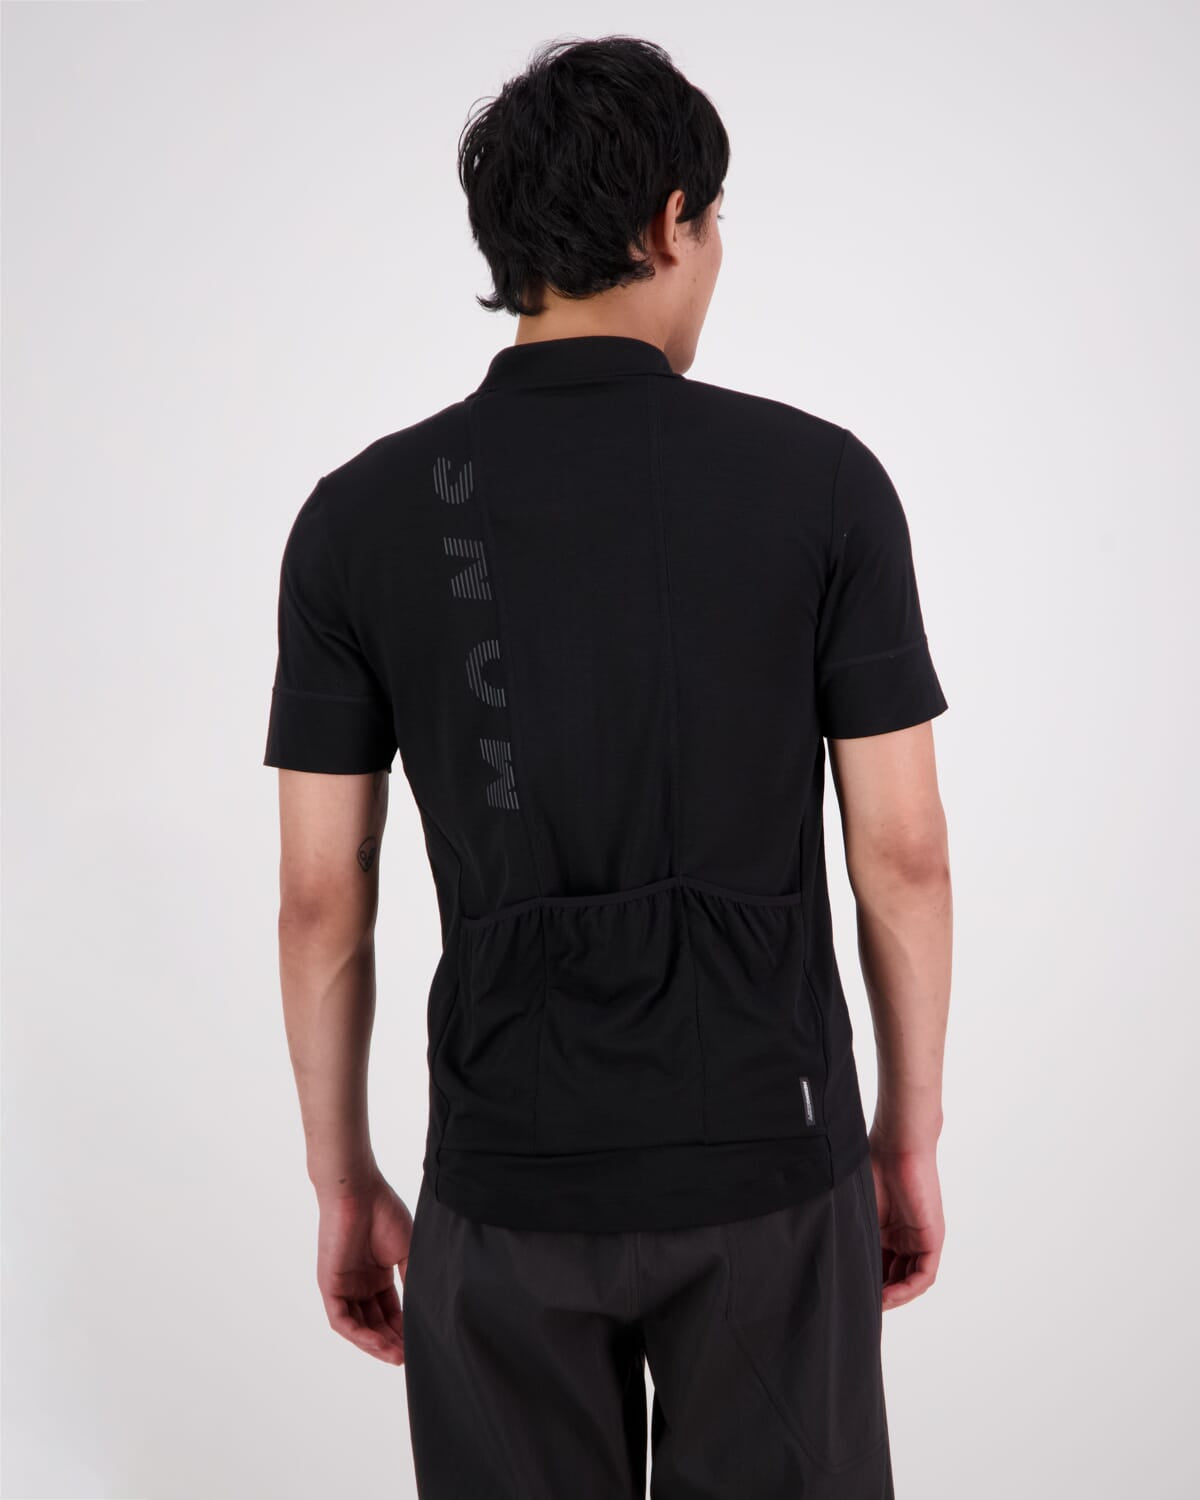 Roam Cargo Merino Shift Full Zip T-Shirt - Black